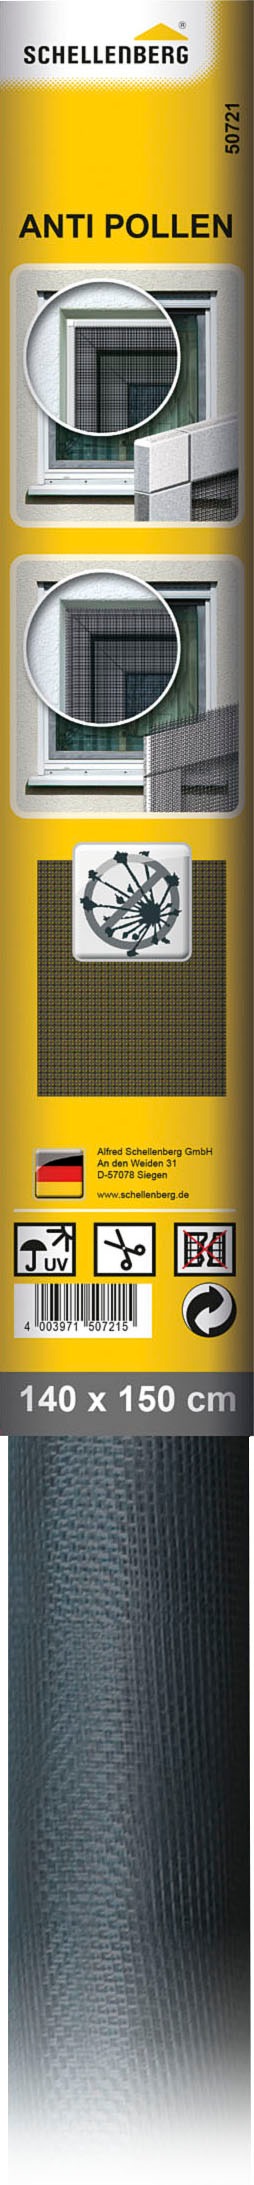 SCHELLENBERG Pollenschutzgitter »Pollenschutzgitter und Fliegengitter Minirolle«, anthrazit, 140 x 150 cm